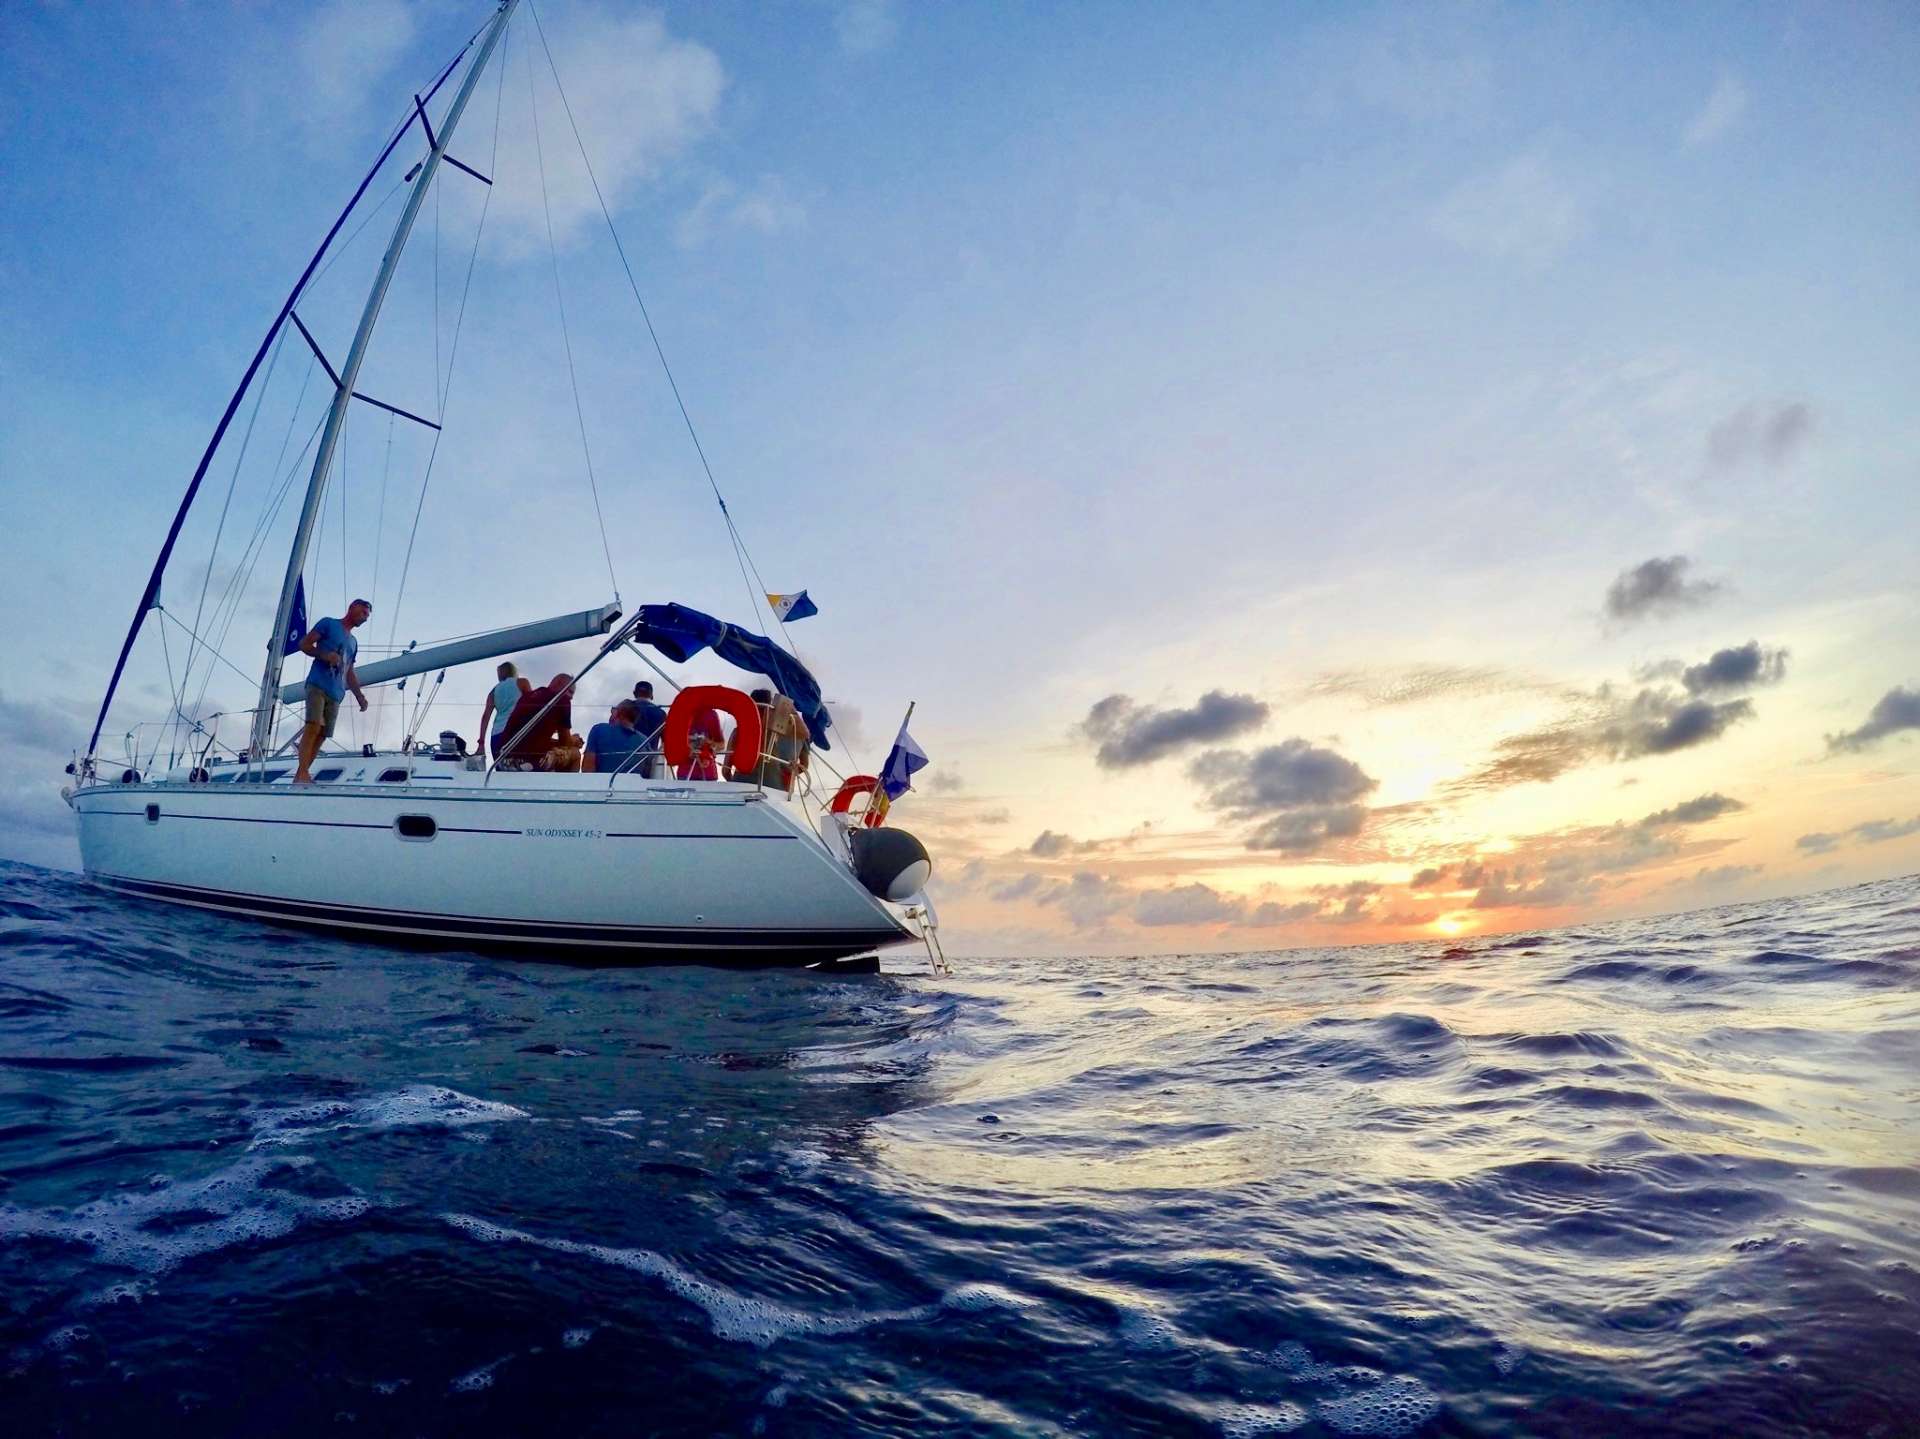 Sun Odyssey 45.2 - Yacht Charter Netherlands Antilles & Boat hire in Netherlands Antilles Bonaire Kralendijk Bonaire 2